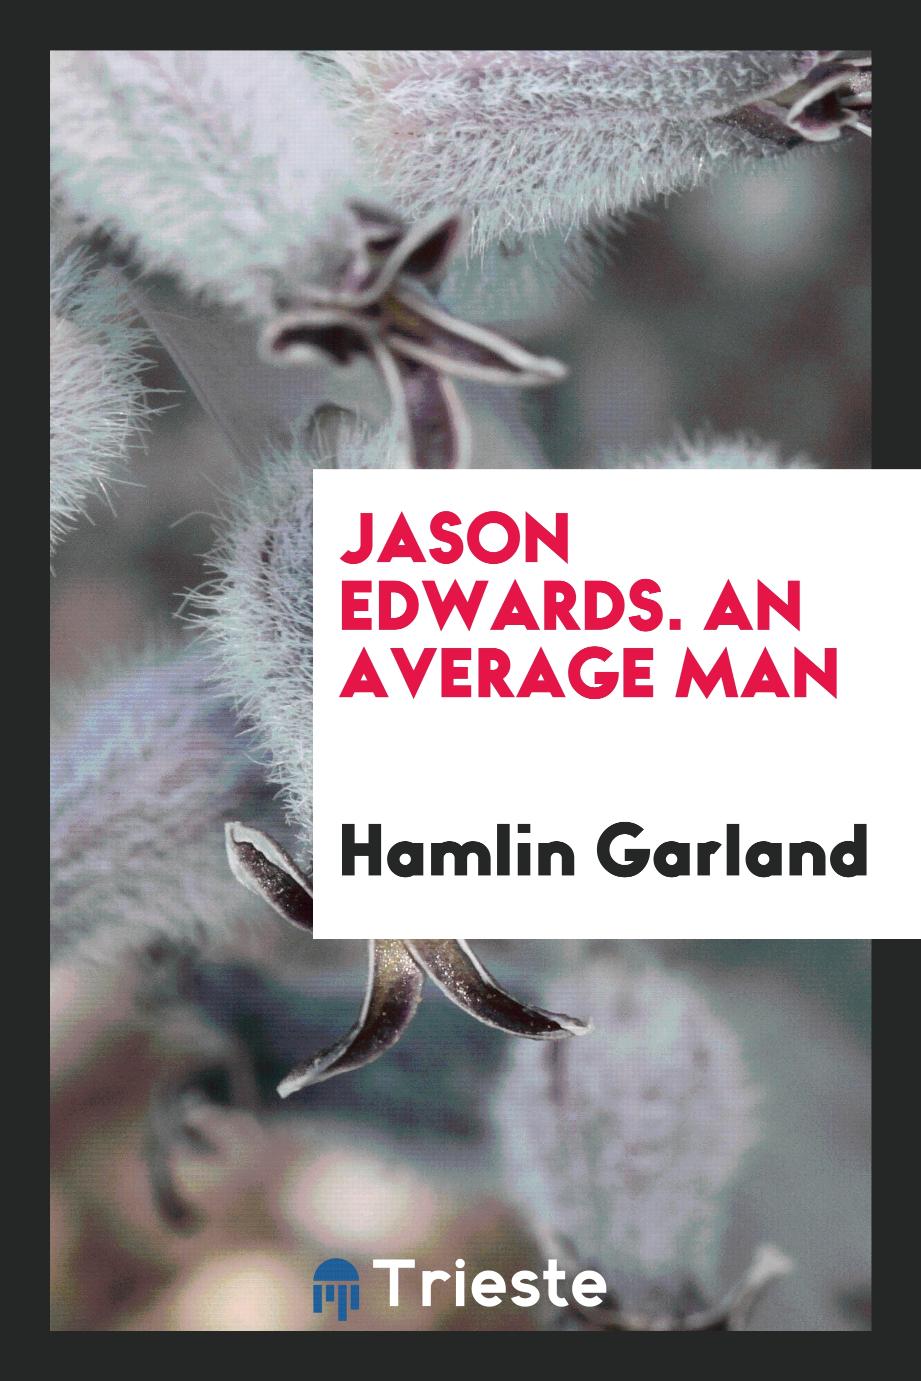 Jason Edwards. An Average Man